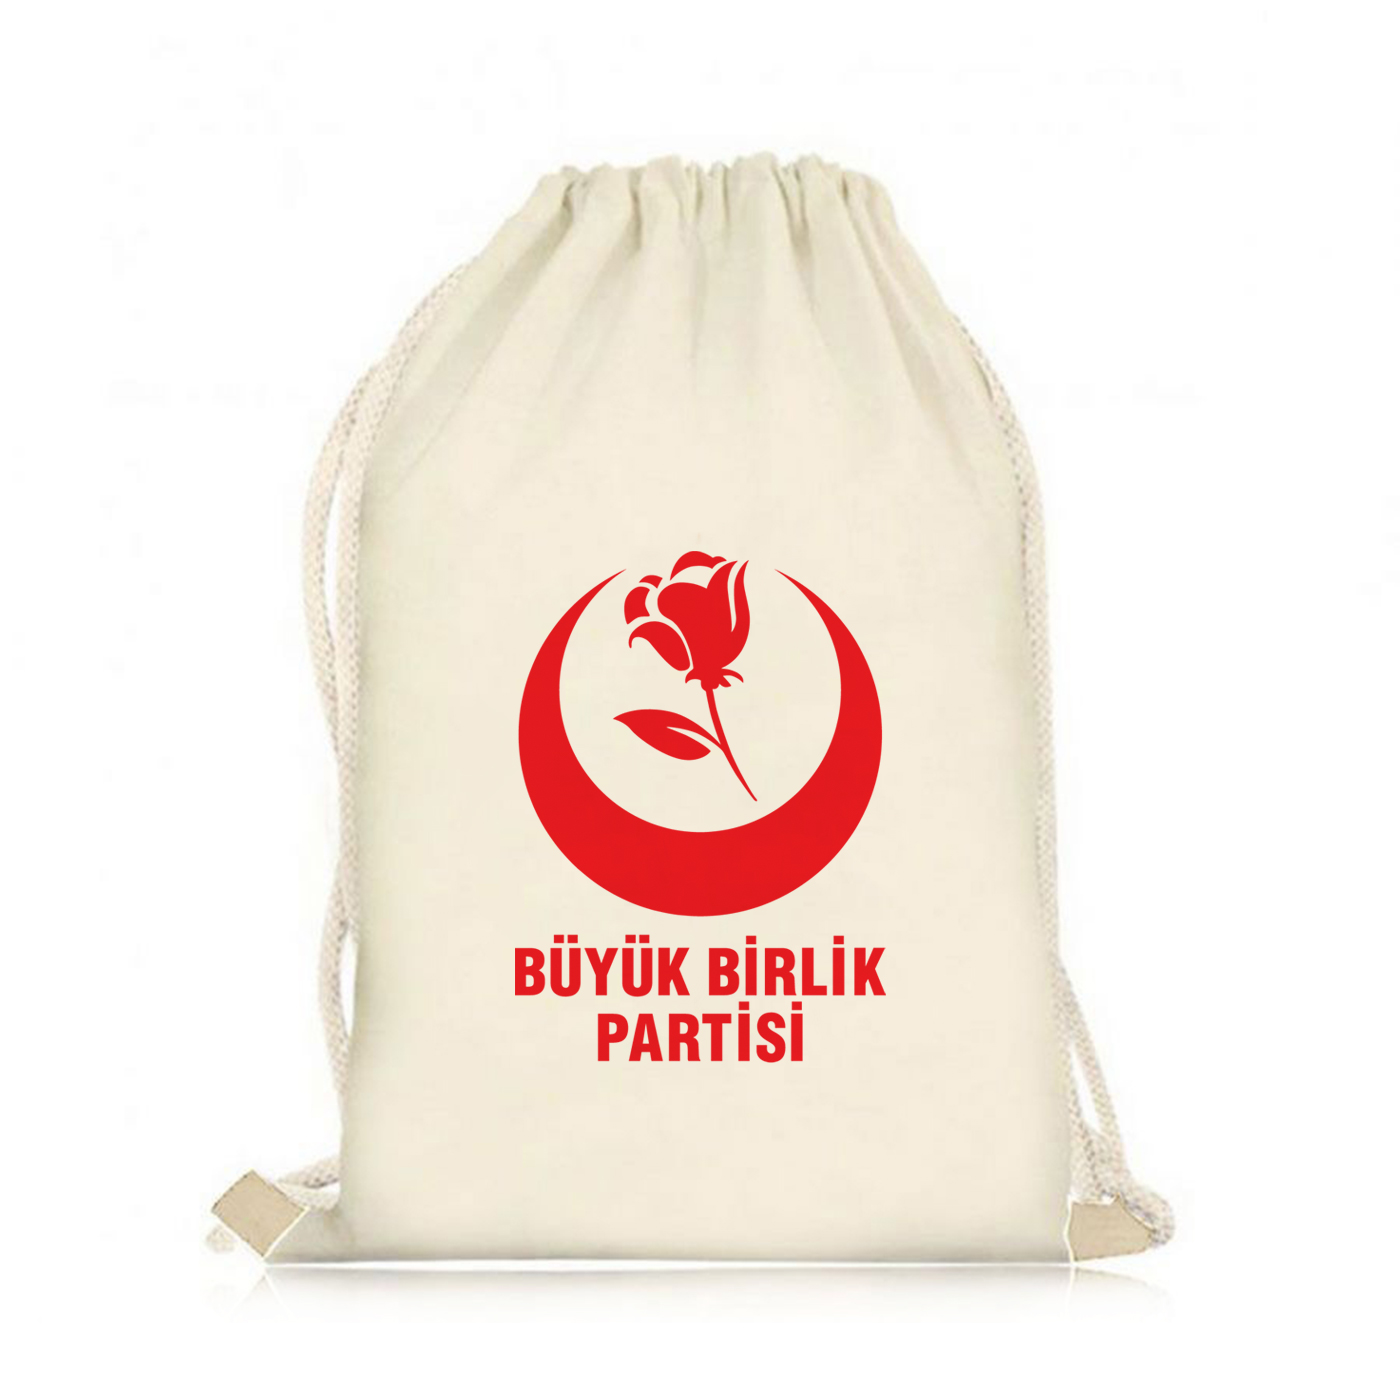 Büyük Birlik Partisi Logo Baskılı Ham Bez Çanta, 